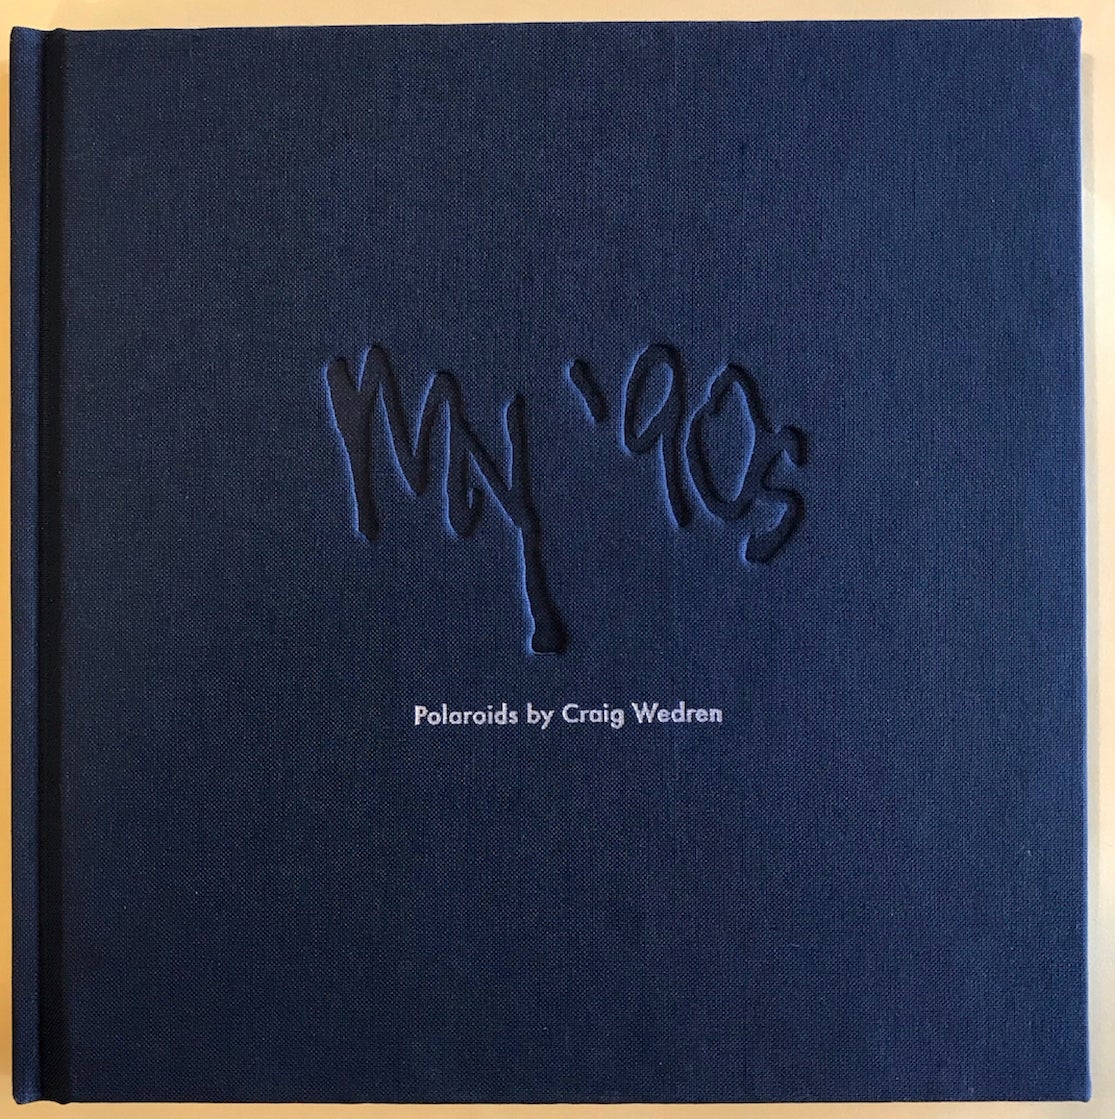 My '90s: Polaroids - Book (Craig Wedren)